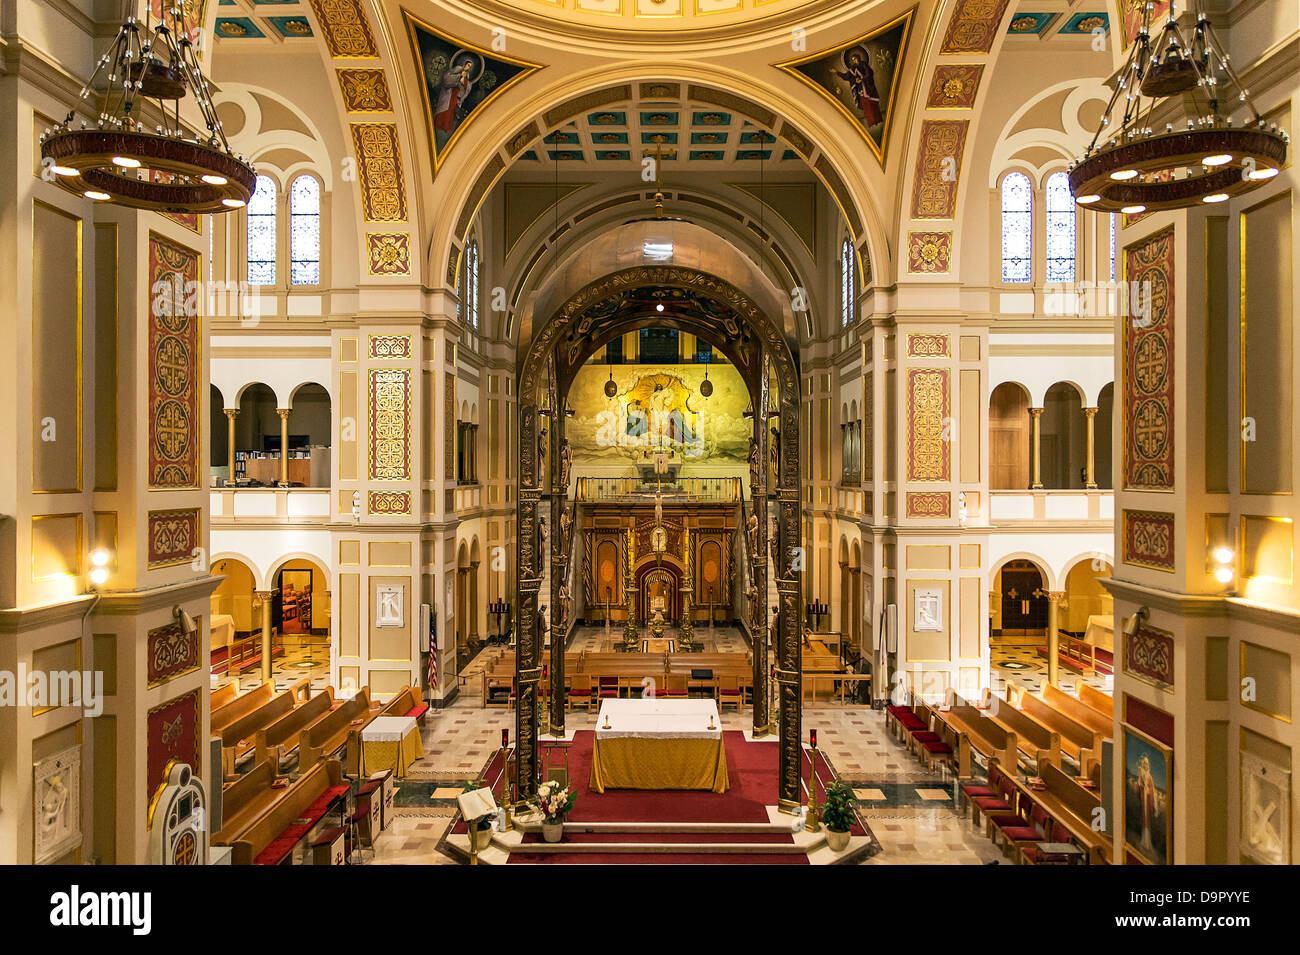 Interieur, die Gedächtnis-Kirche des Heiligen Grabes, Franziskaner-Kloster des Heiligen Landes in Amerika, Washington DC, USA Stockfoto